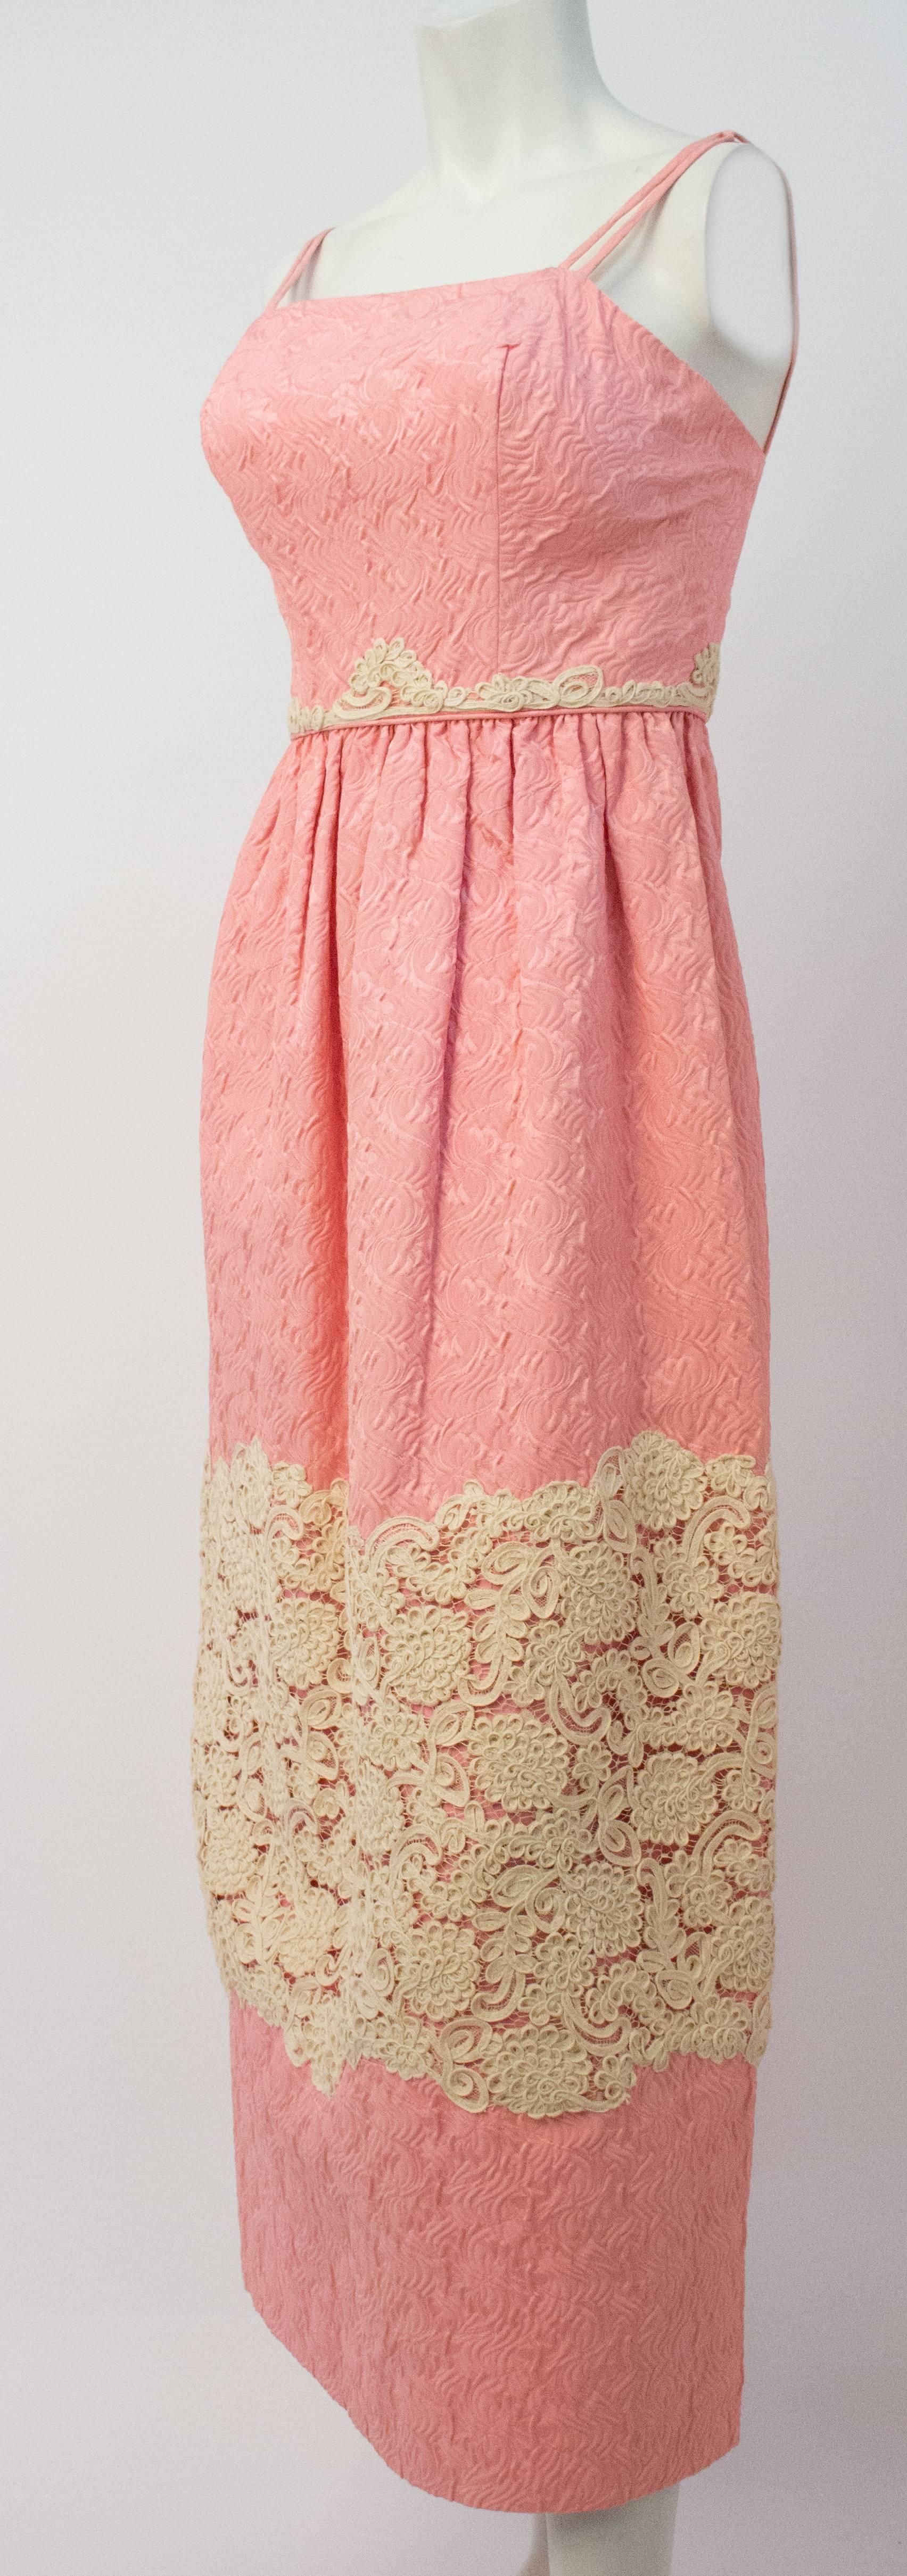 robe rose à colonnes des années 60 avec appliques en dentelle. Entièrement doublé, corsage désossé. Fermeture éclair arrière en métal.